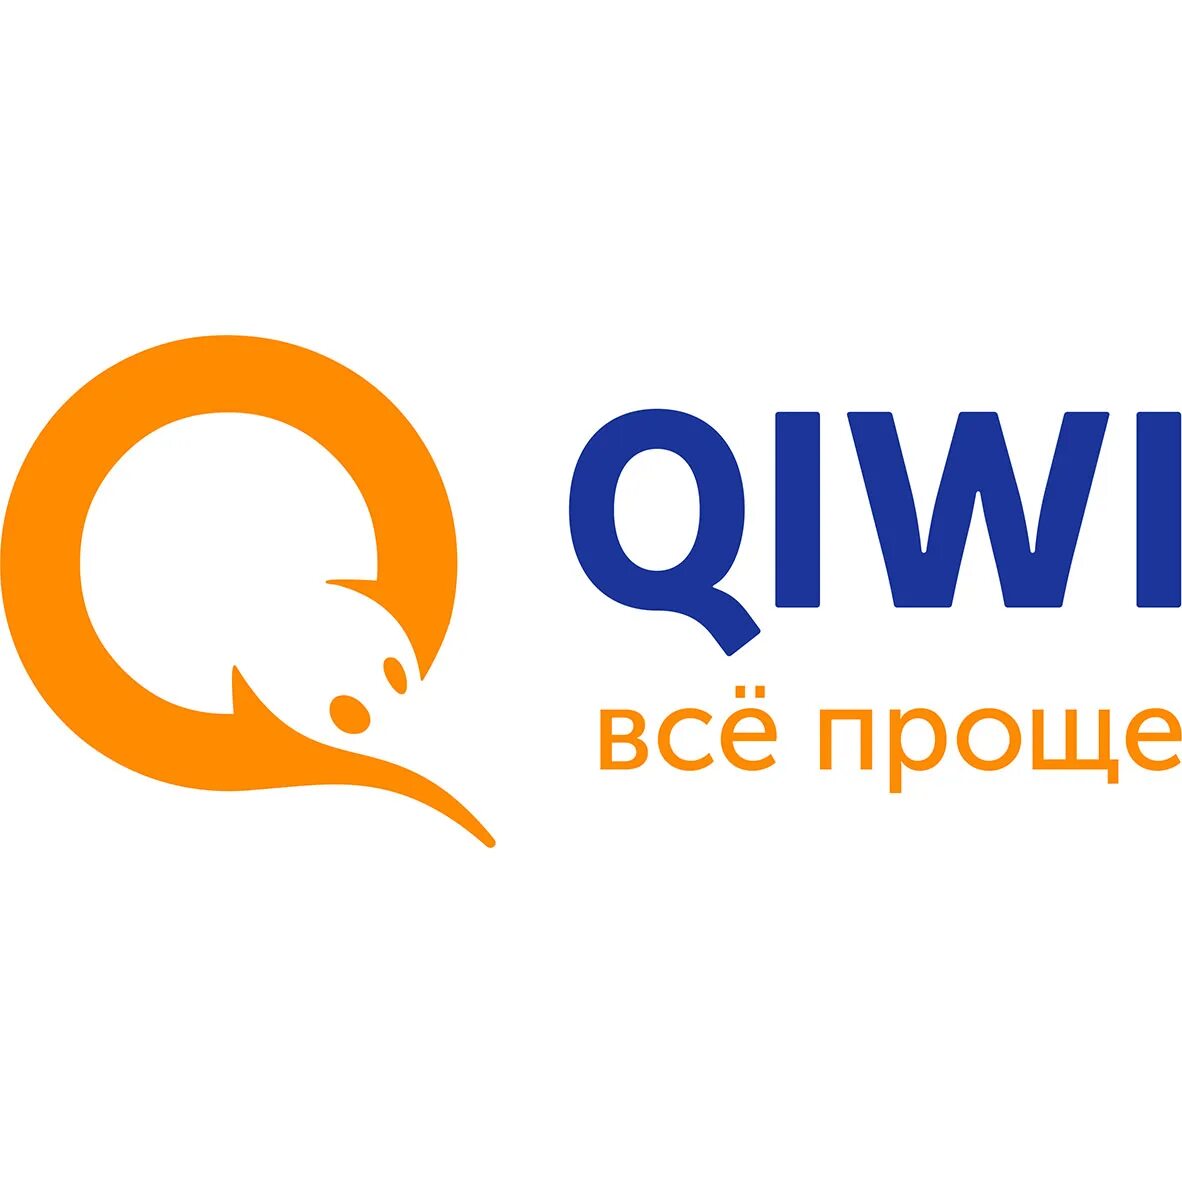 Qiwi чья компания. QIWI кошелек. Киви логотип. Значок киви кошелька. Qiqi.